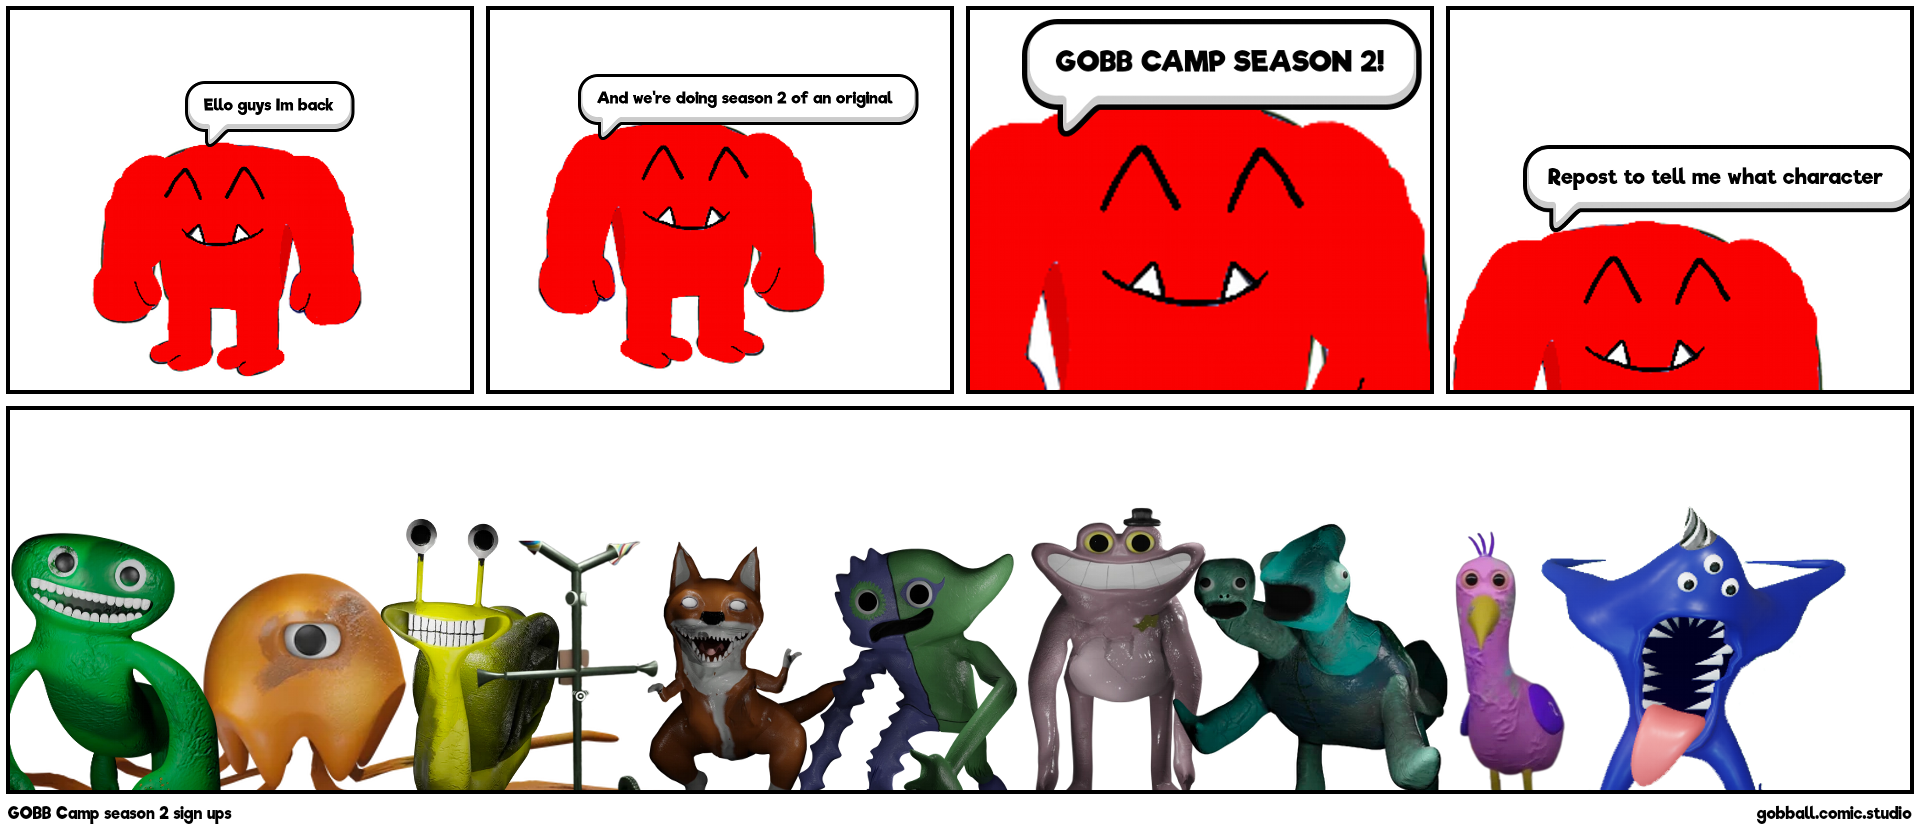 GOBB Camp season 2 sign ups